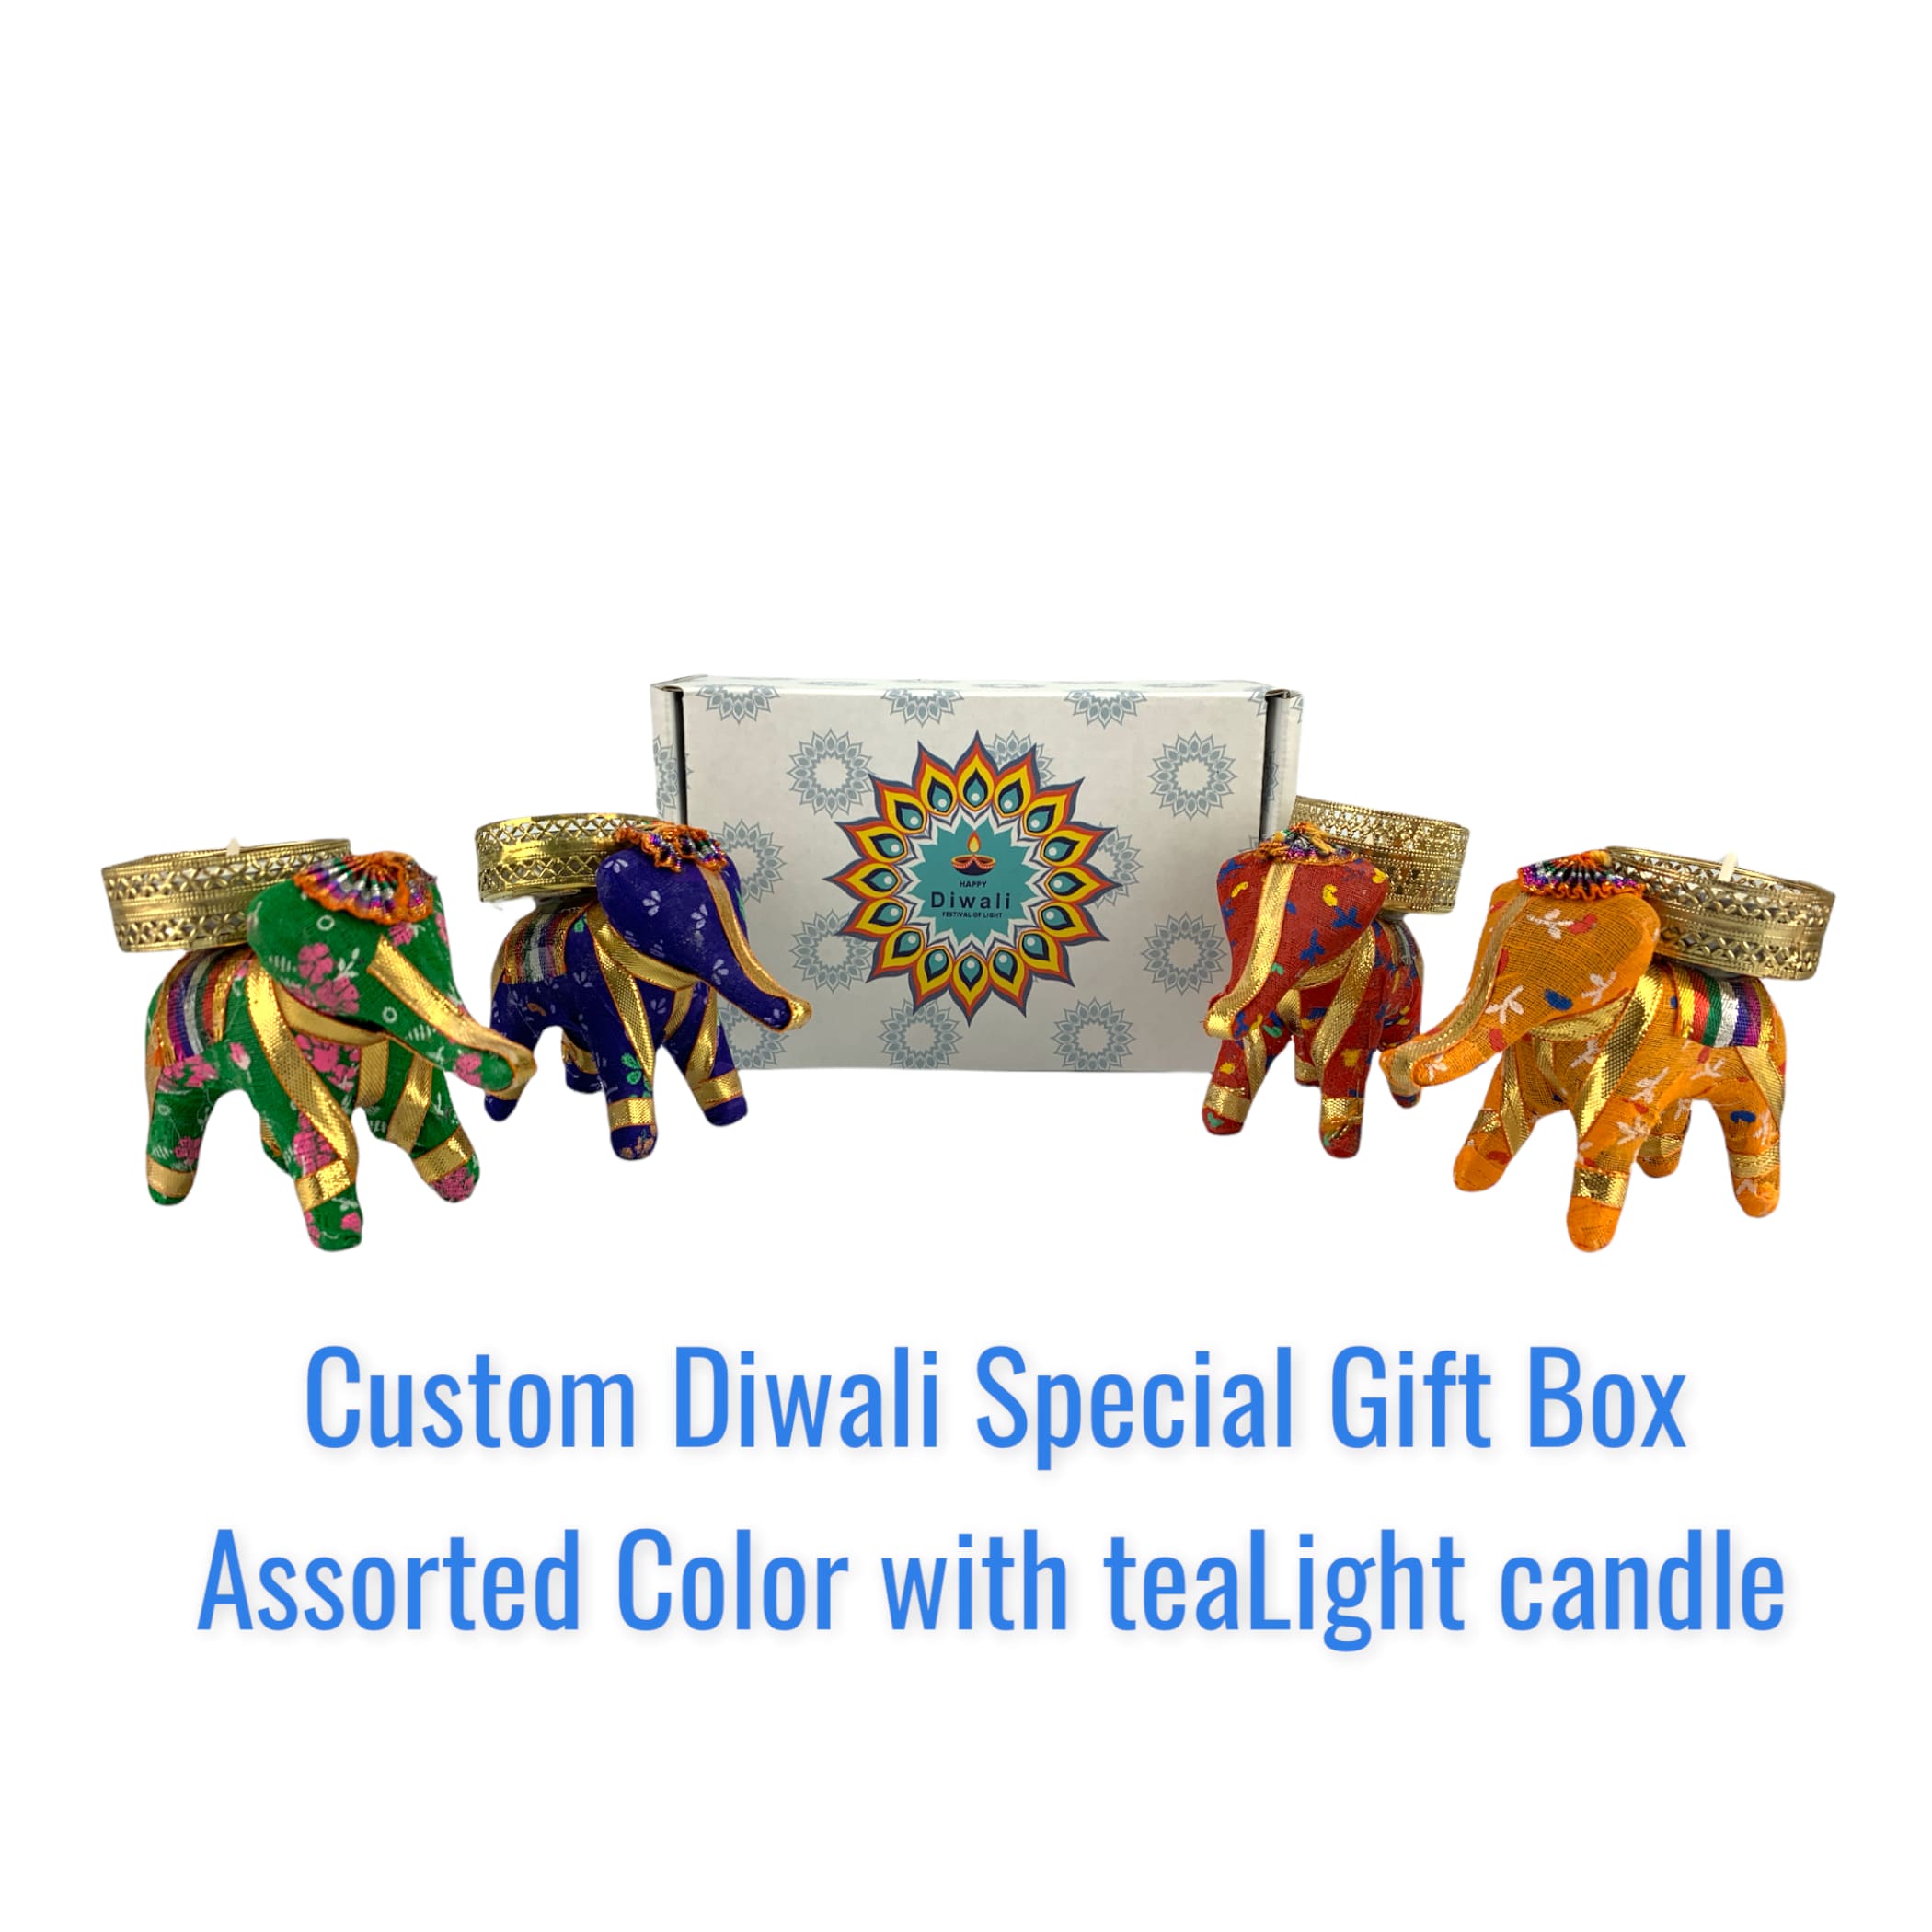 Diwali gift box usa hamper tealight holder basket decor diya